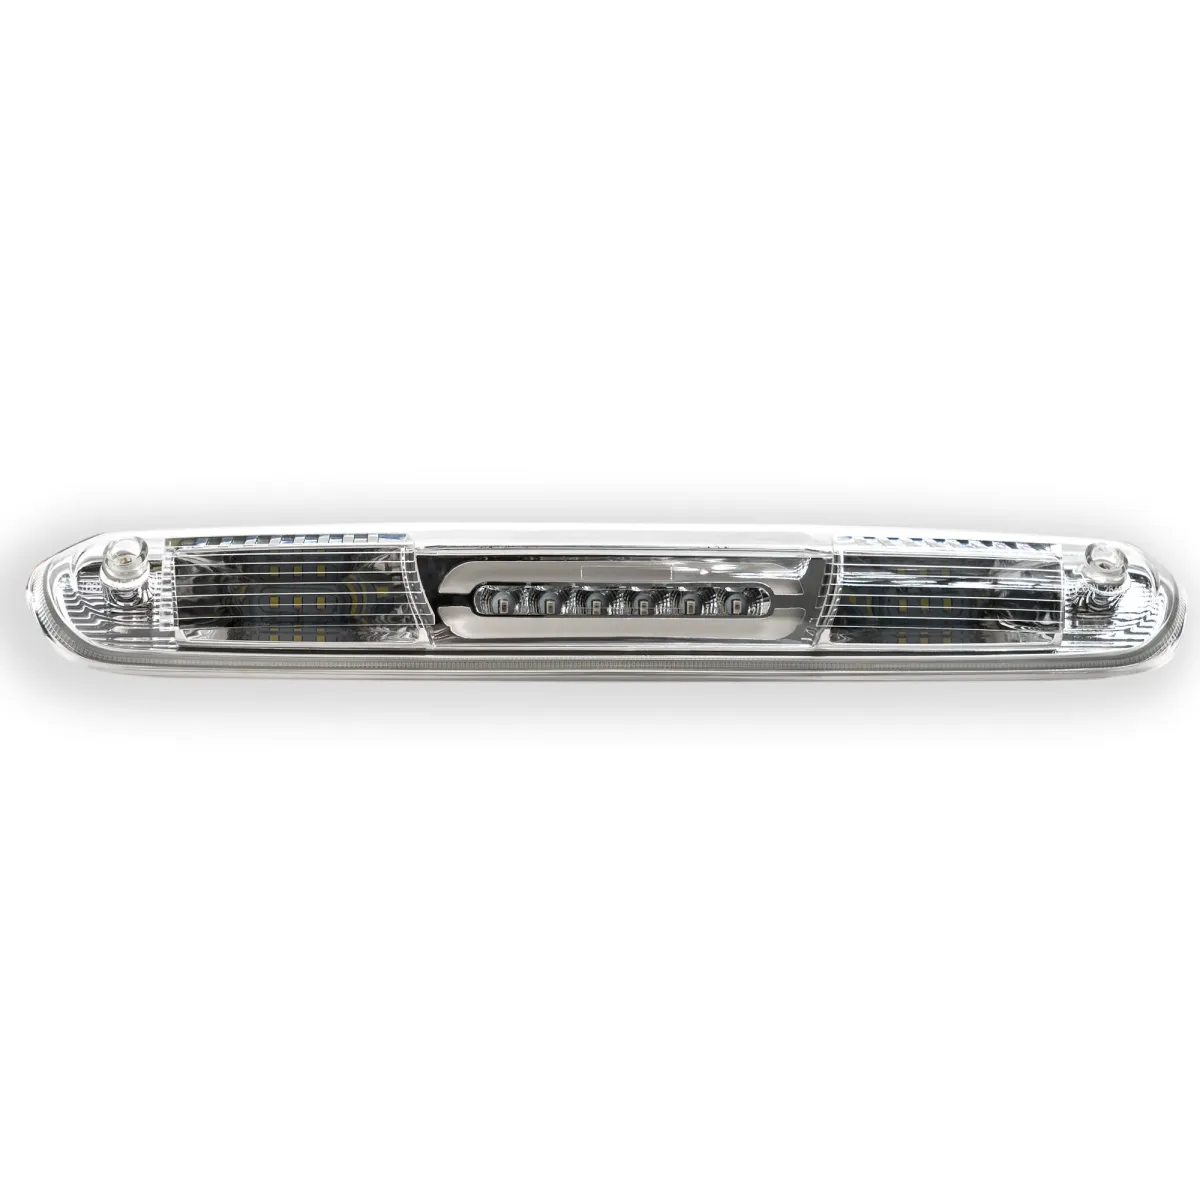 Recon Lighting - Recon Clear Lens LED 3rd Brake Light W/ White Cargo Light For 07-13 GM 1500/2500